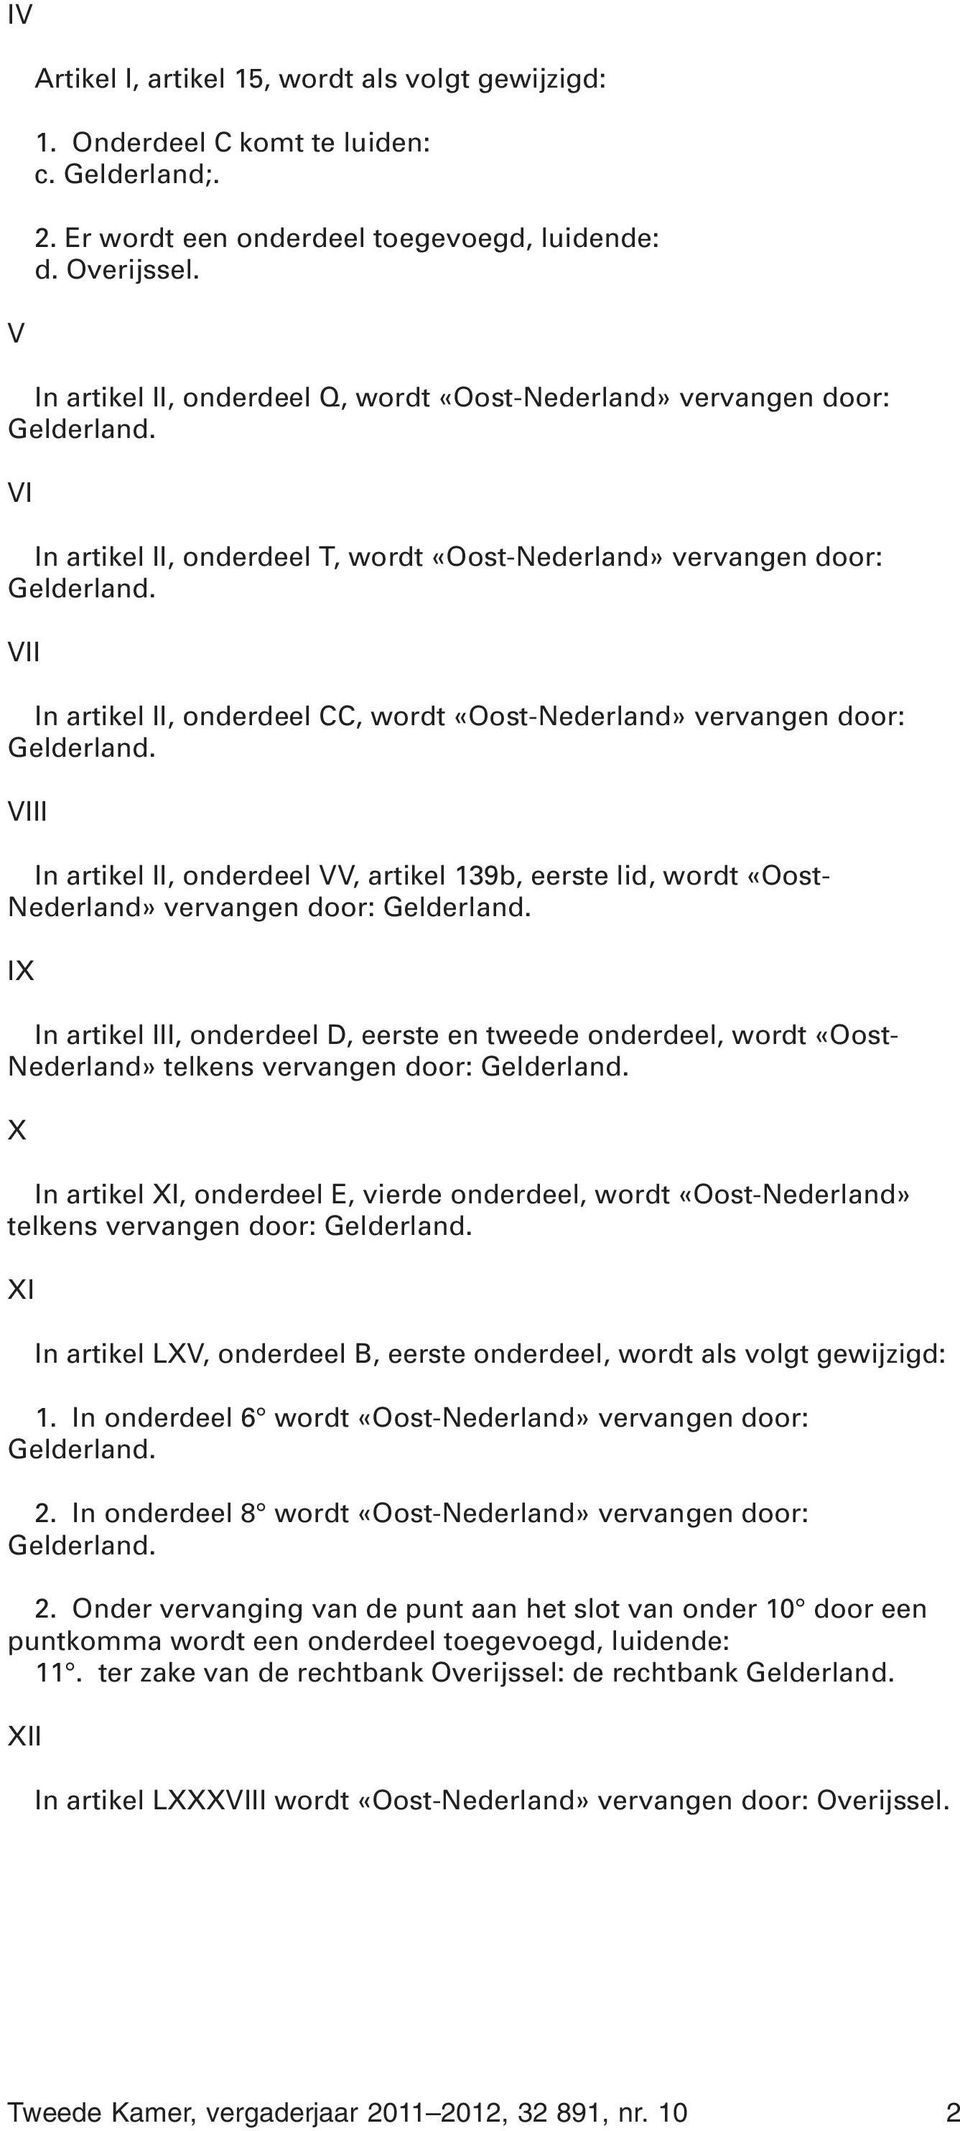 vervangen door: VIII In artikel II, onderdeel VV, artikel 139b, eerste lid, wordt «Oost- Nederland» vervangen door: IX In artikel III, onderdeel D, eerste en tweede onderdeel, wordt «Oost- Nederland»